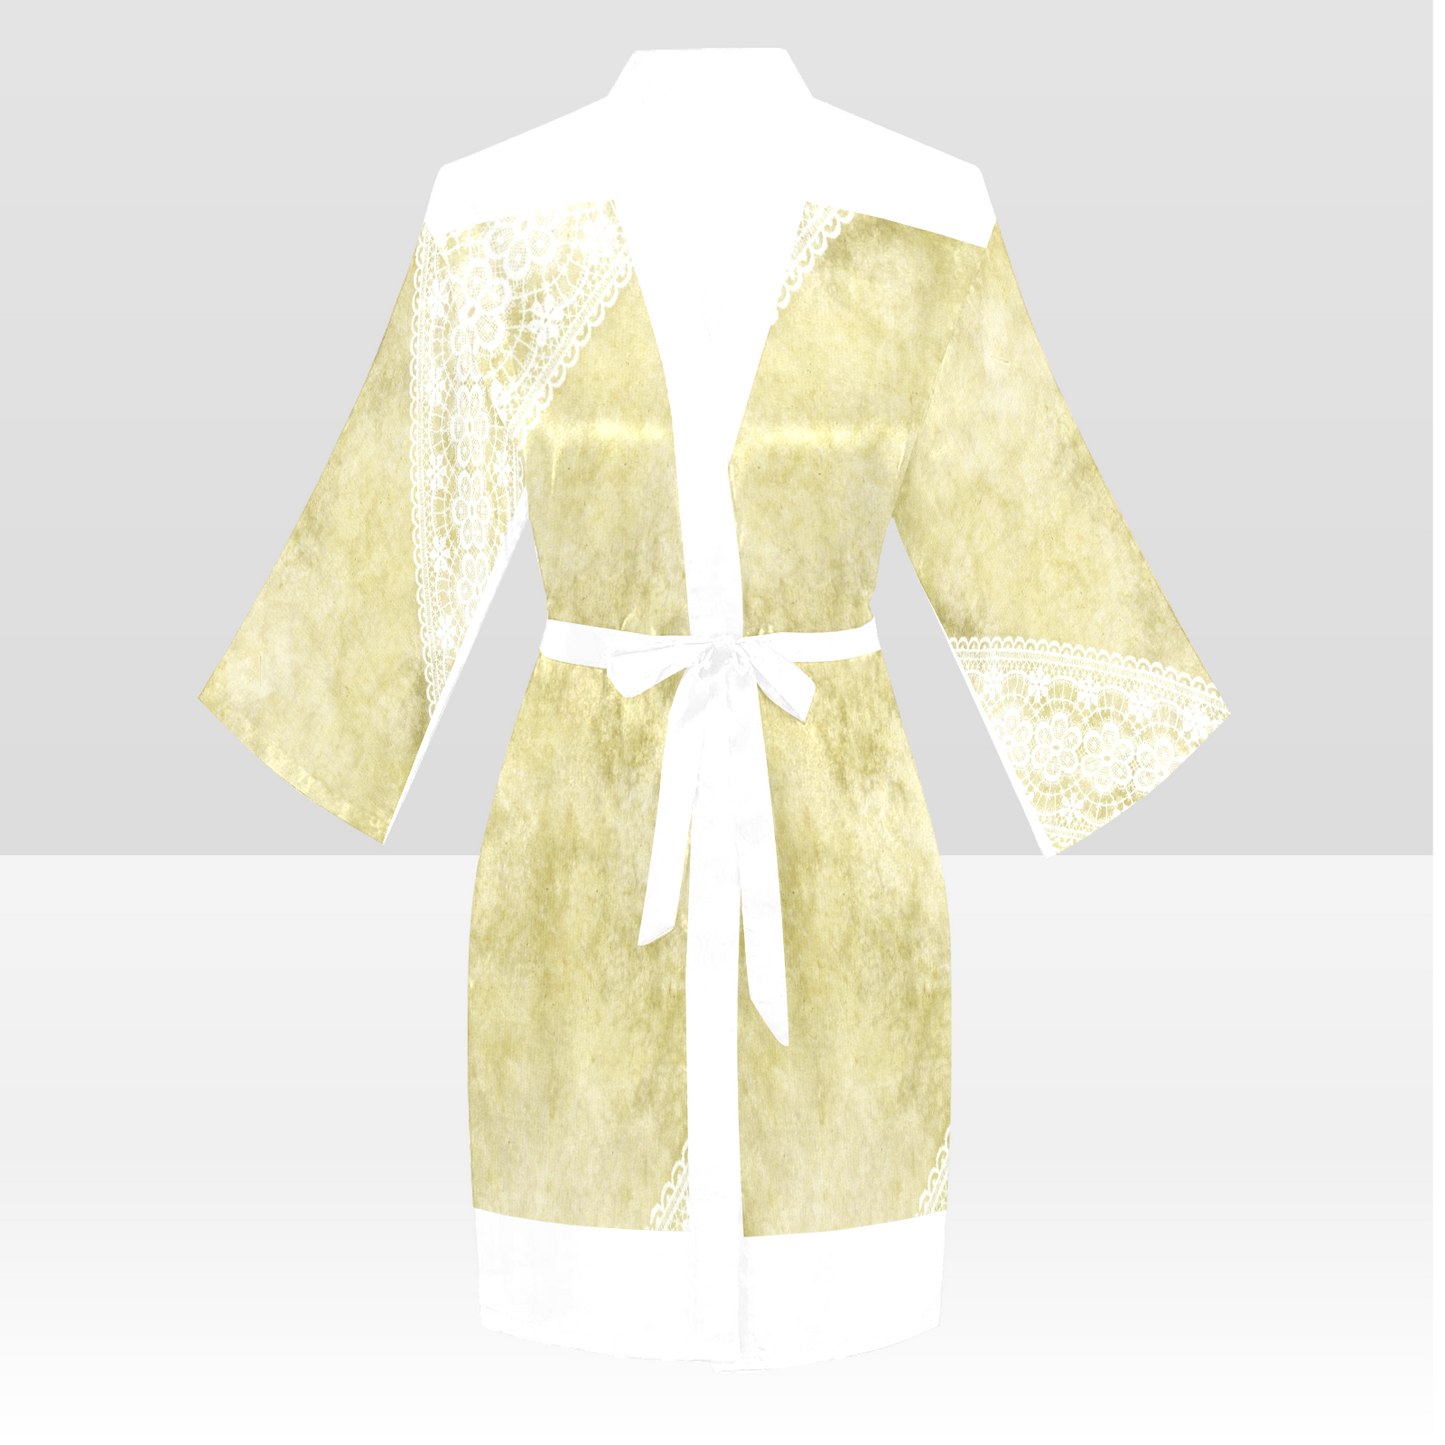 Victorian Lace Kimono Robe, Black or White Trim, Sizes XS to 2XL, Design 43